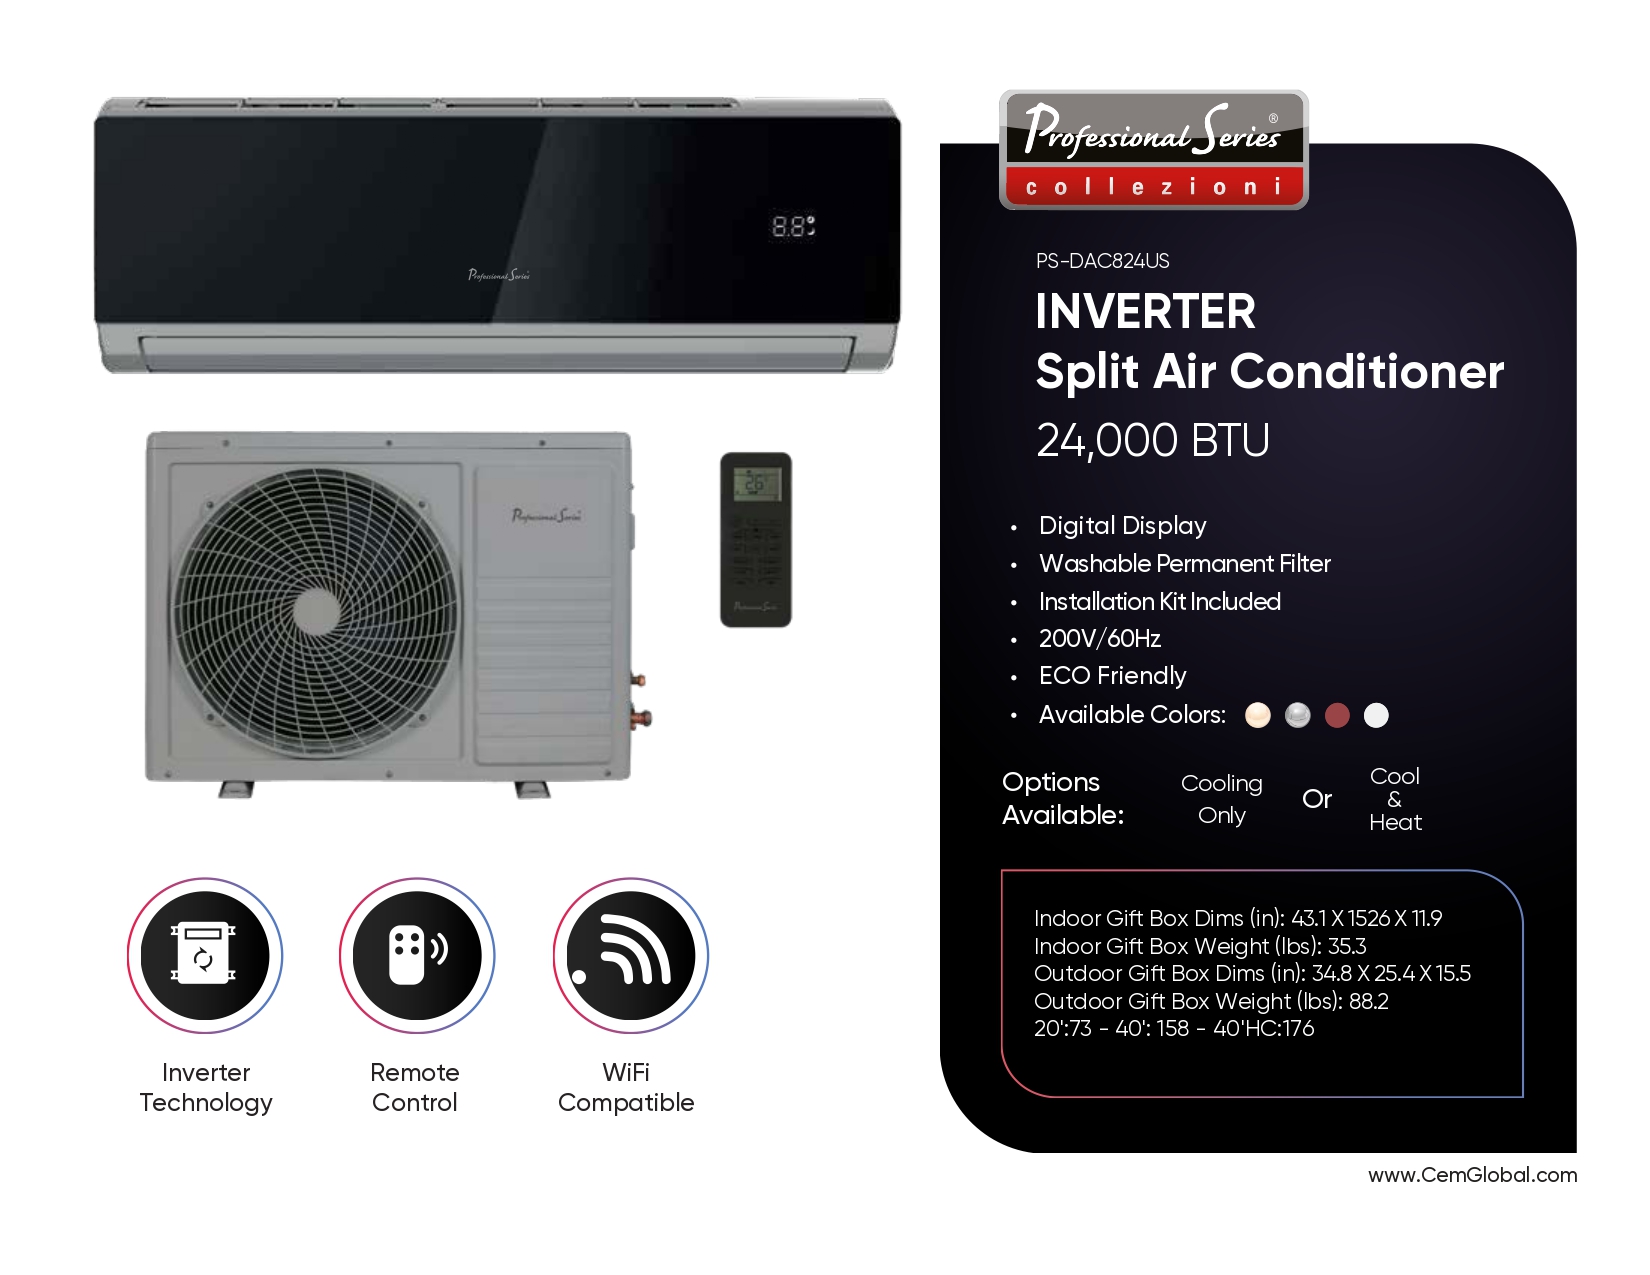 INVERTER Split Air Conditioner 24,000 BTU